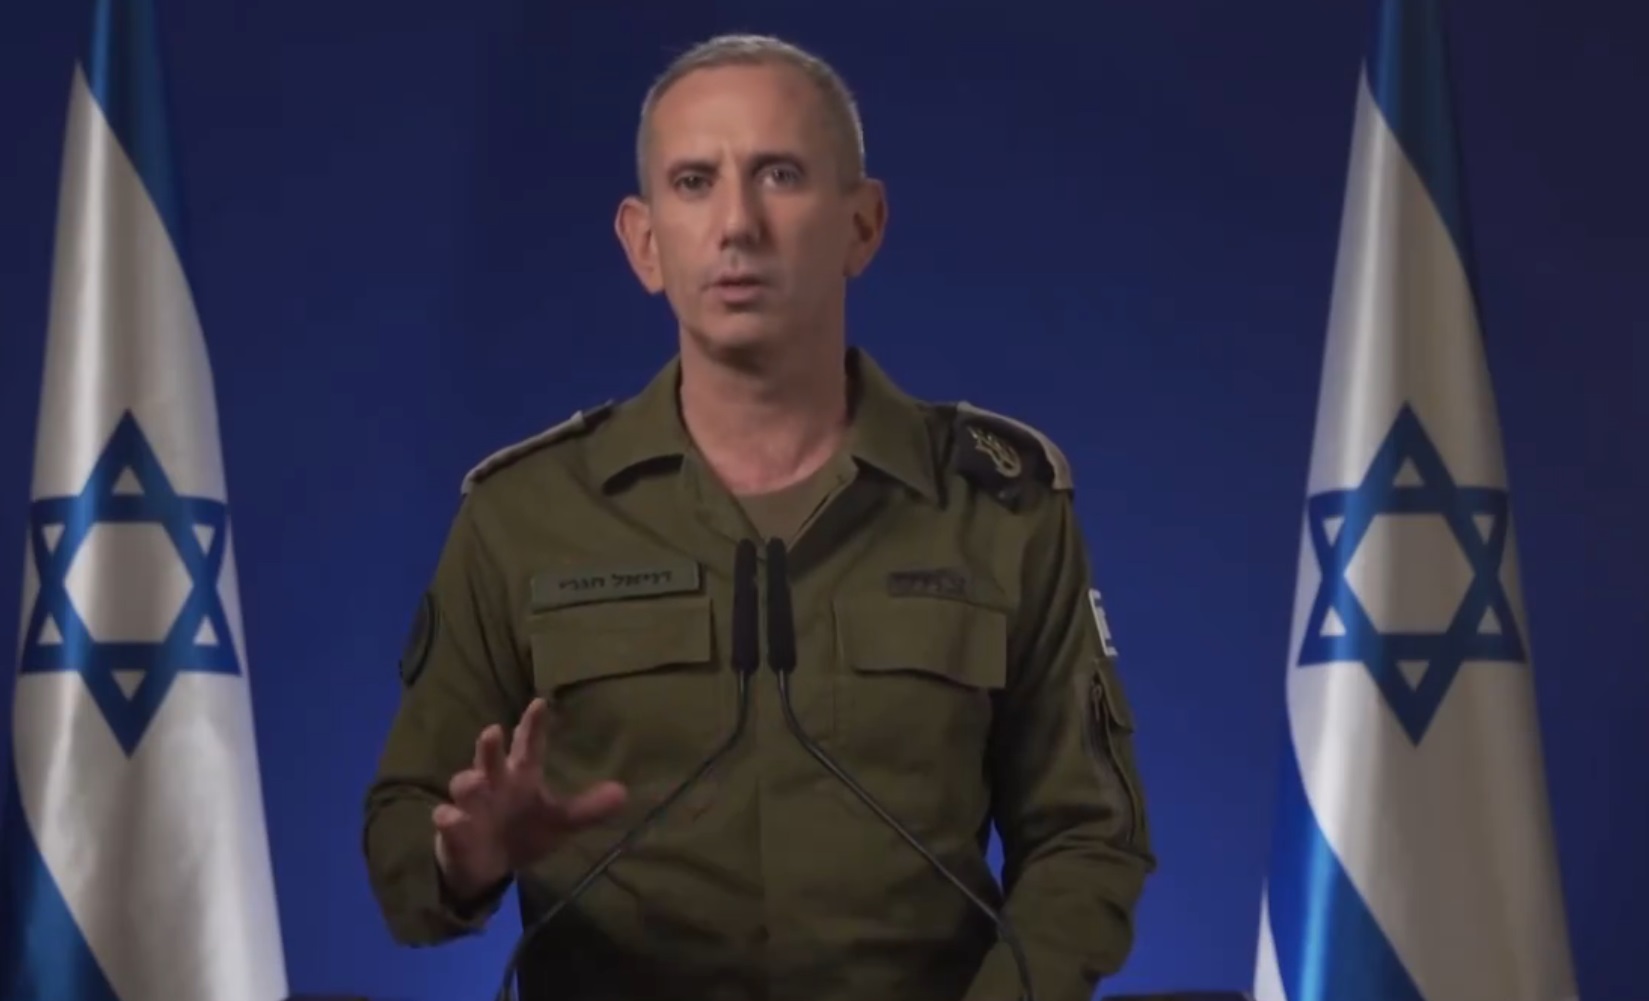 armia izraela w stanie wysokiej gotowości. media: gabinet wojenny chce odwetu na iranie